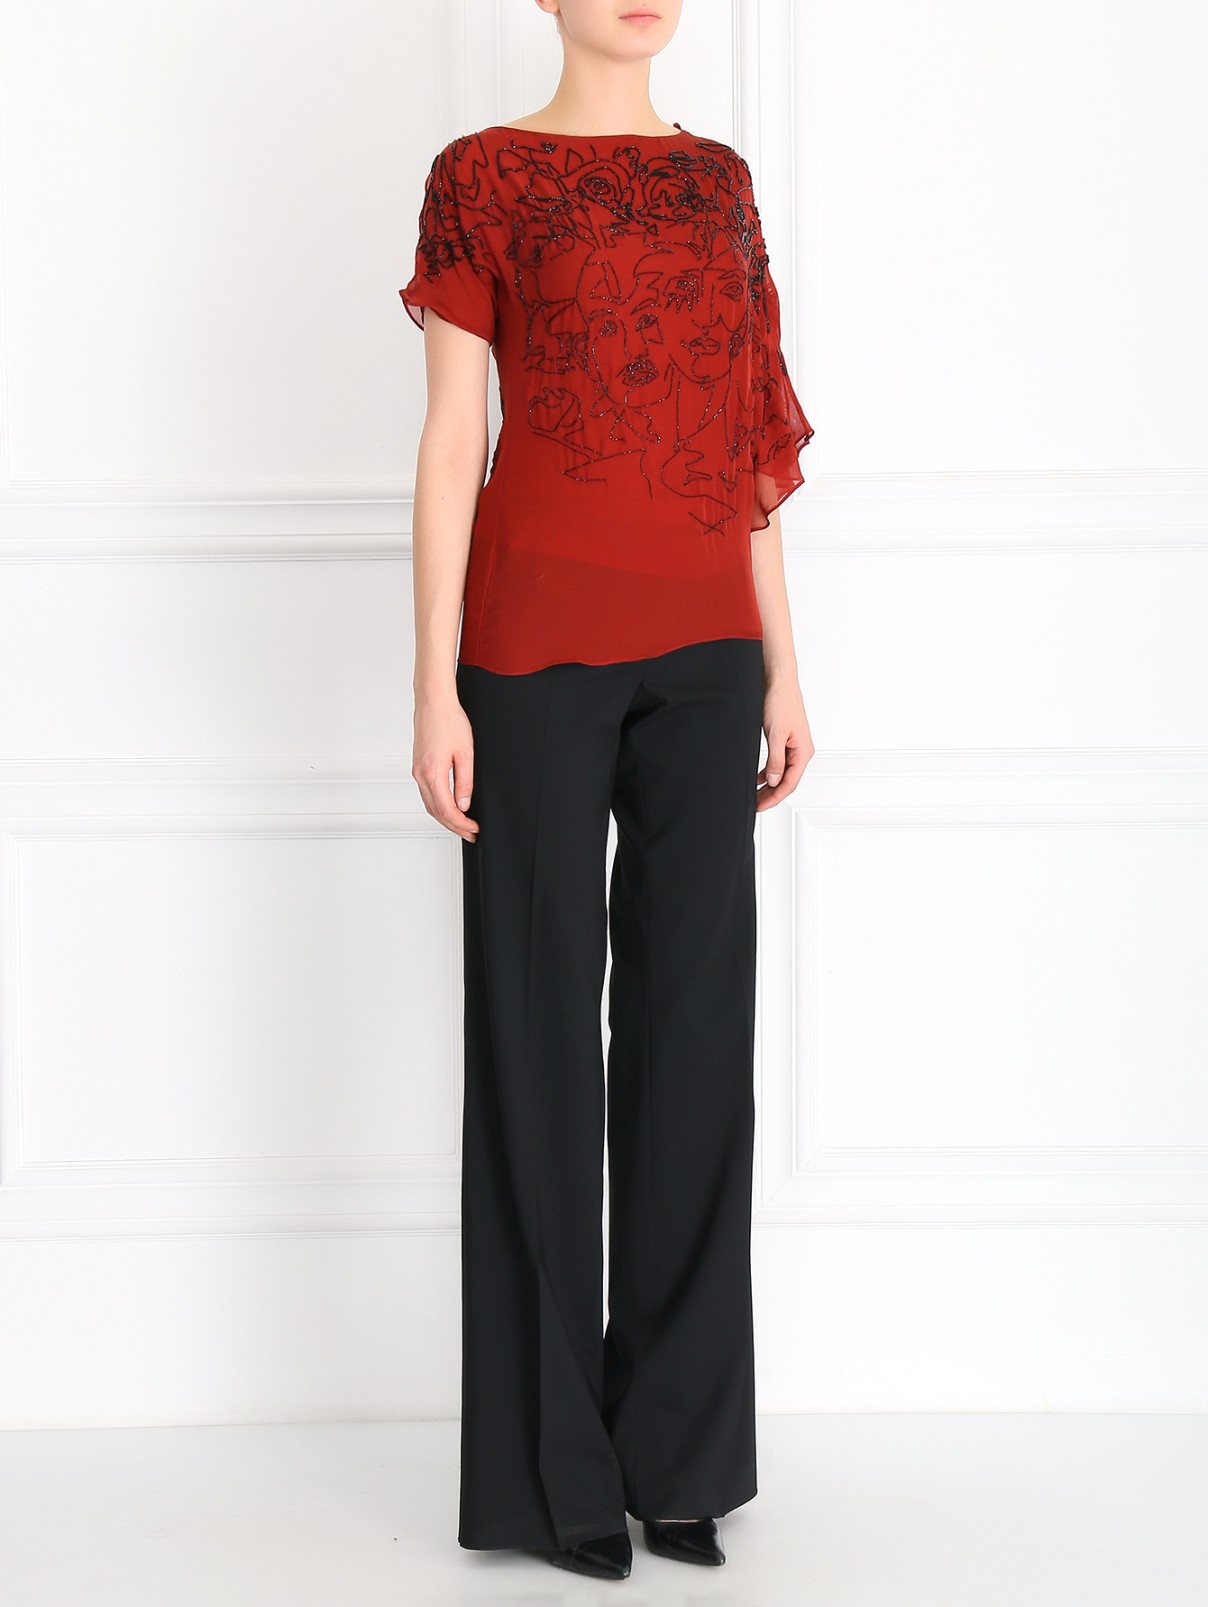 Блуза из шелка декорированная стеклярусом Jean Paul Gaultier  –  Модель Общий вид  – Цвет:  Оранжевый